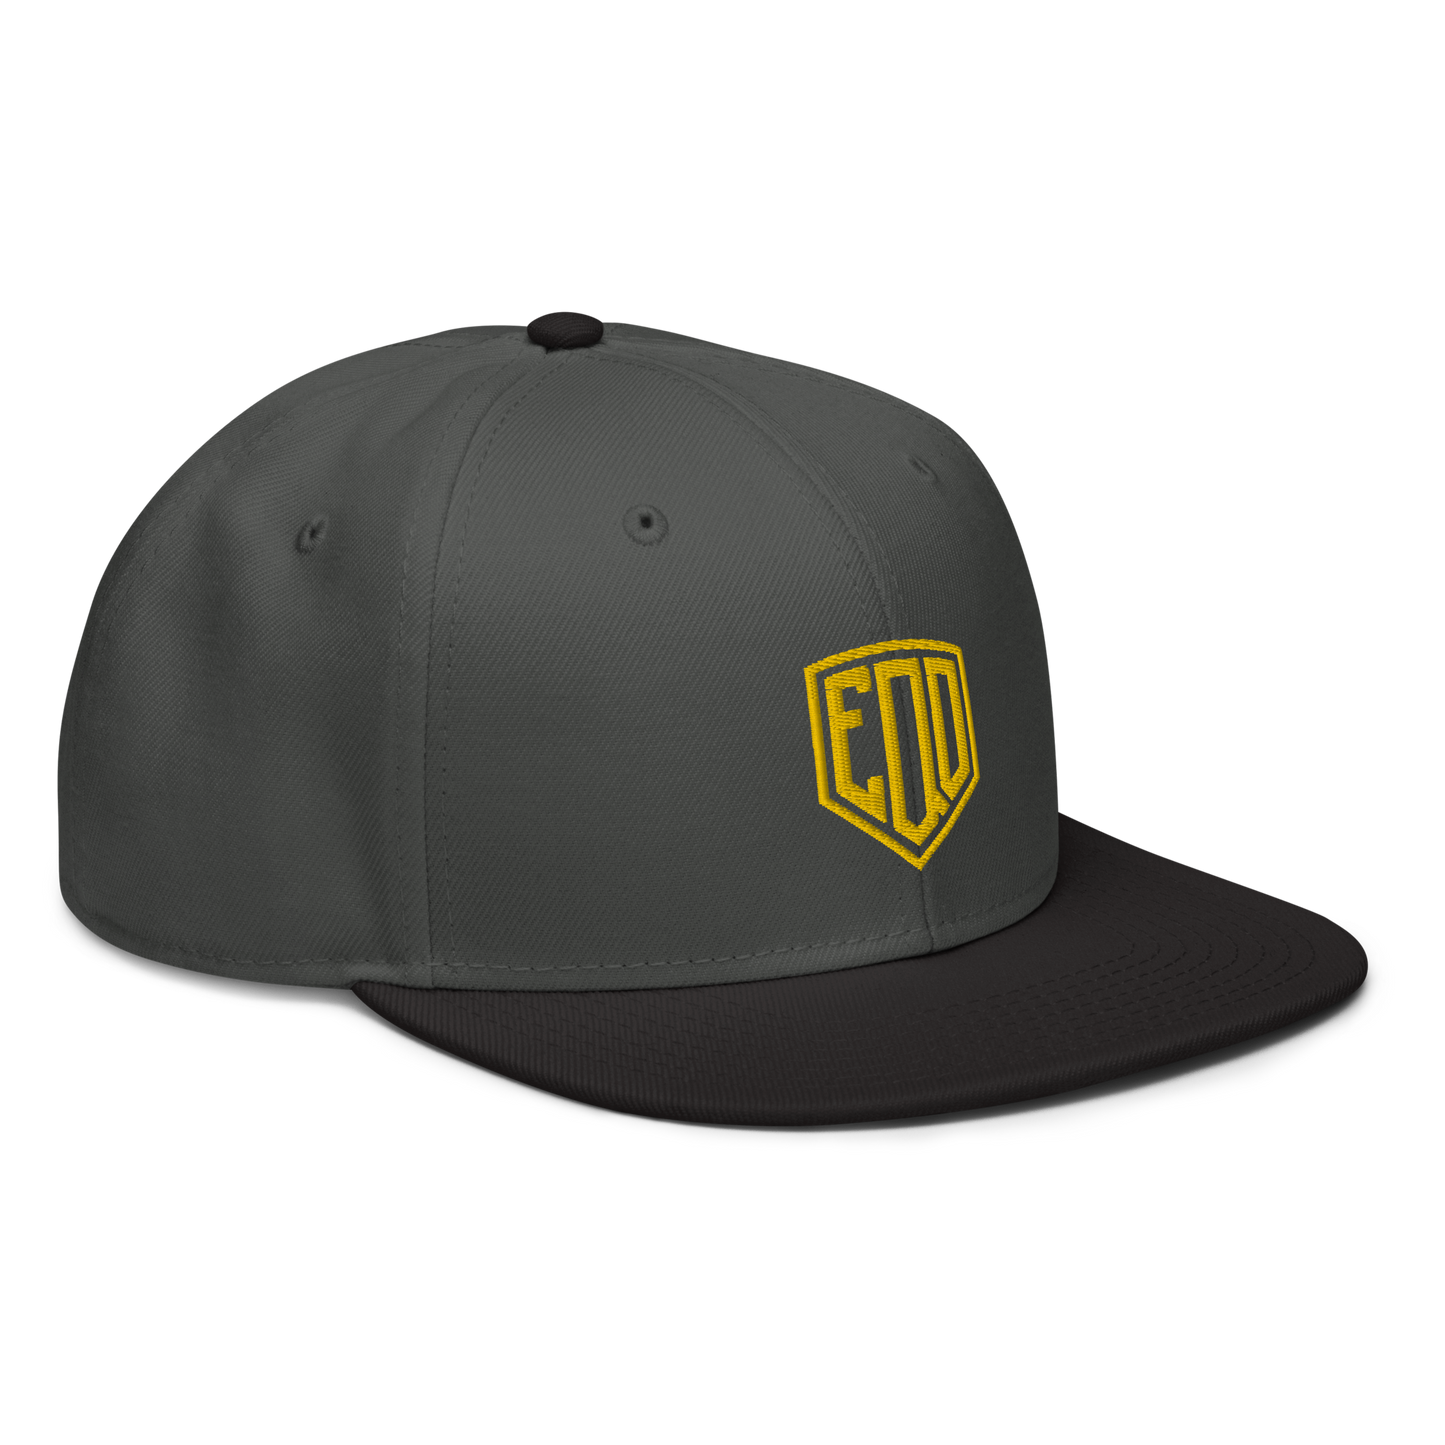 EQD - Snapback Cap